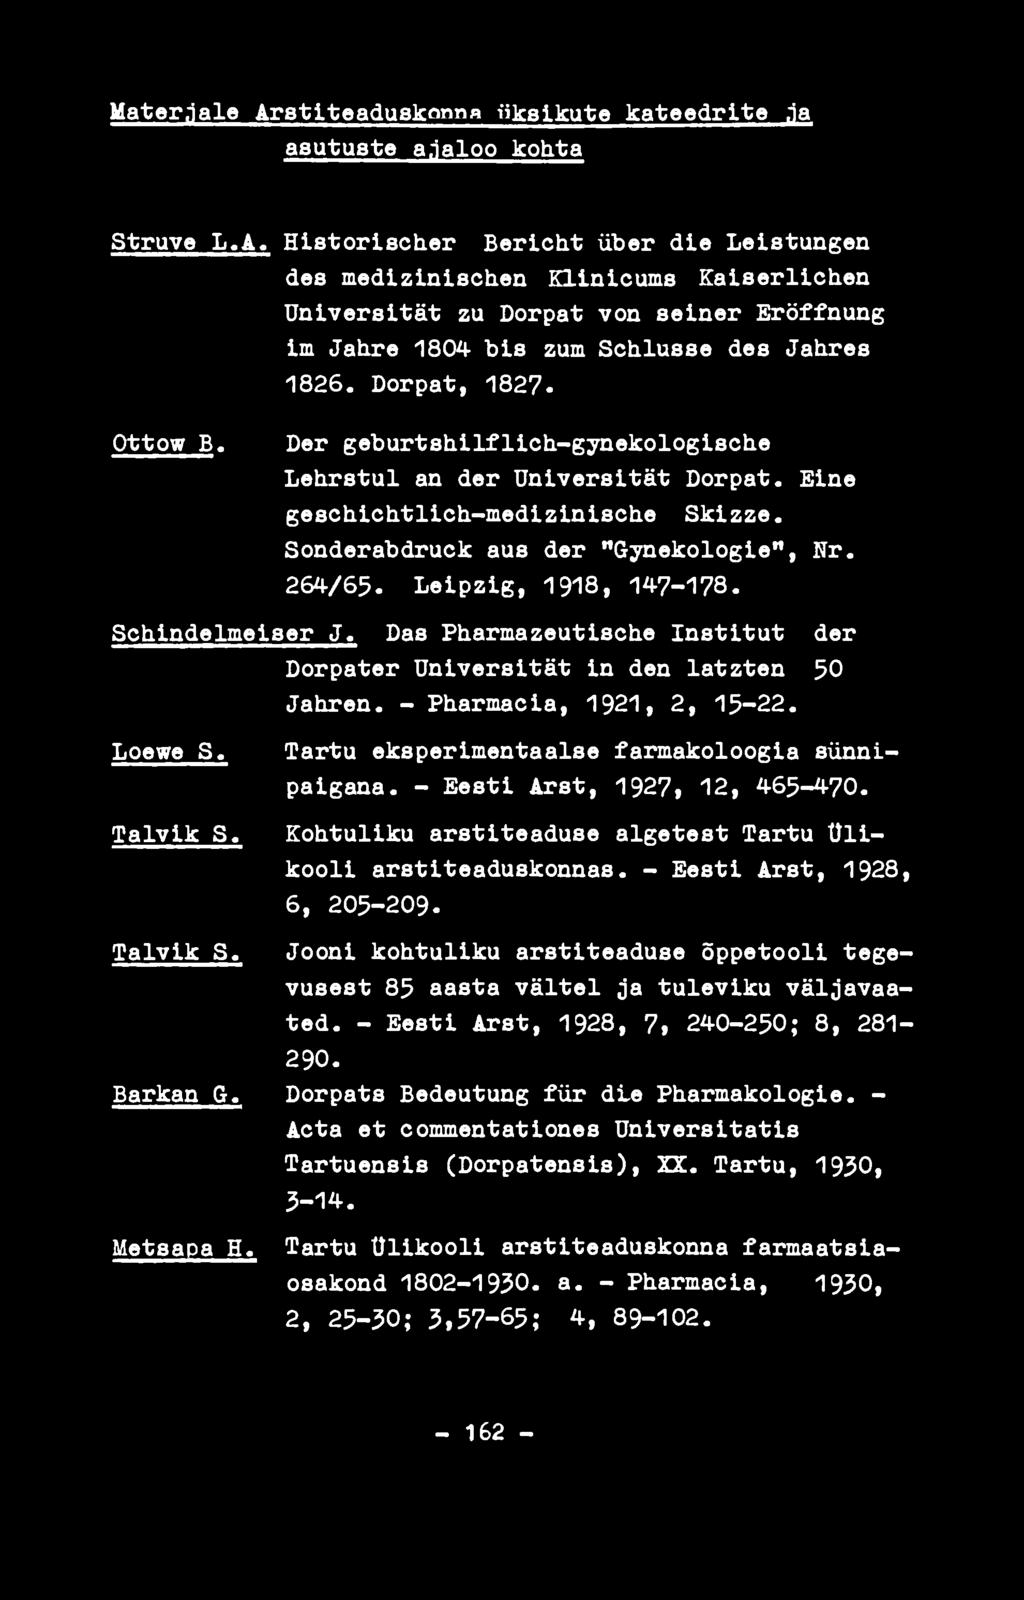 Leipzig, 1918, 147-178. Schindelmelser J. Das Pharmazeutische Institut der Dorpater Universität in den latzten 50 Jahren. - Pharmacia, 1921, 2, 15-22. Loewe S.